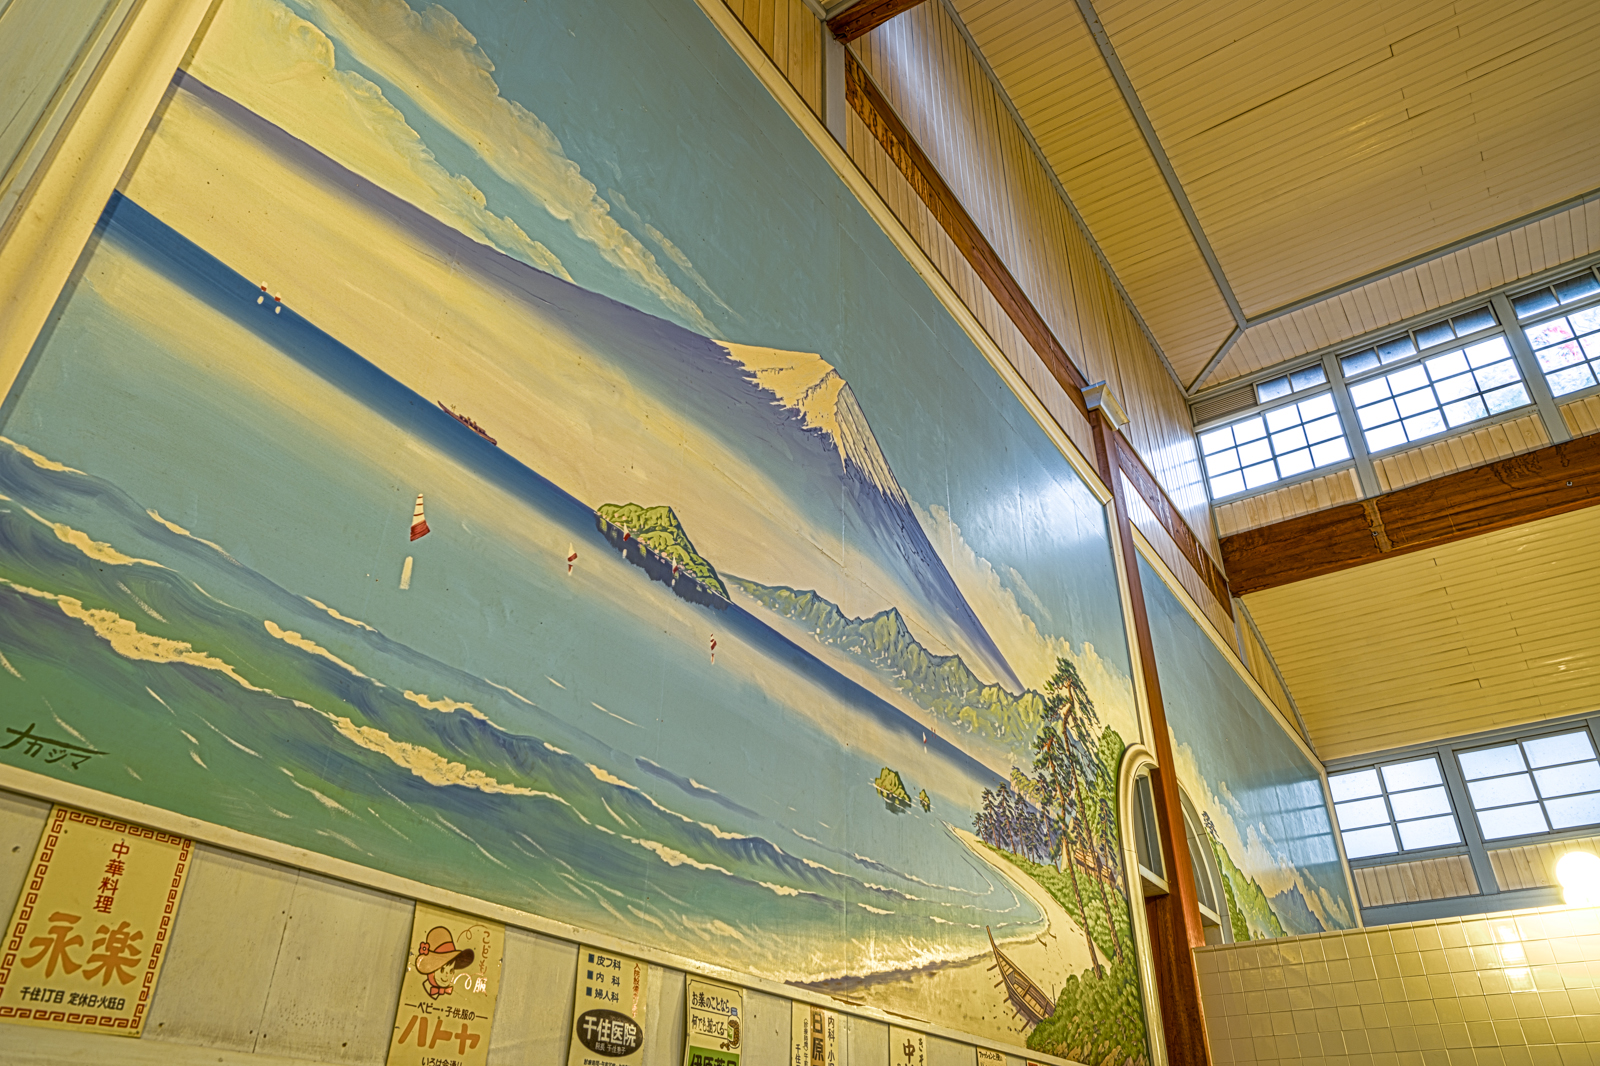 子宝湯、浴場の富士の壁画のHDR写真